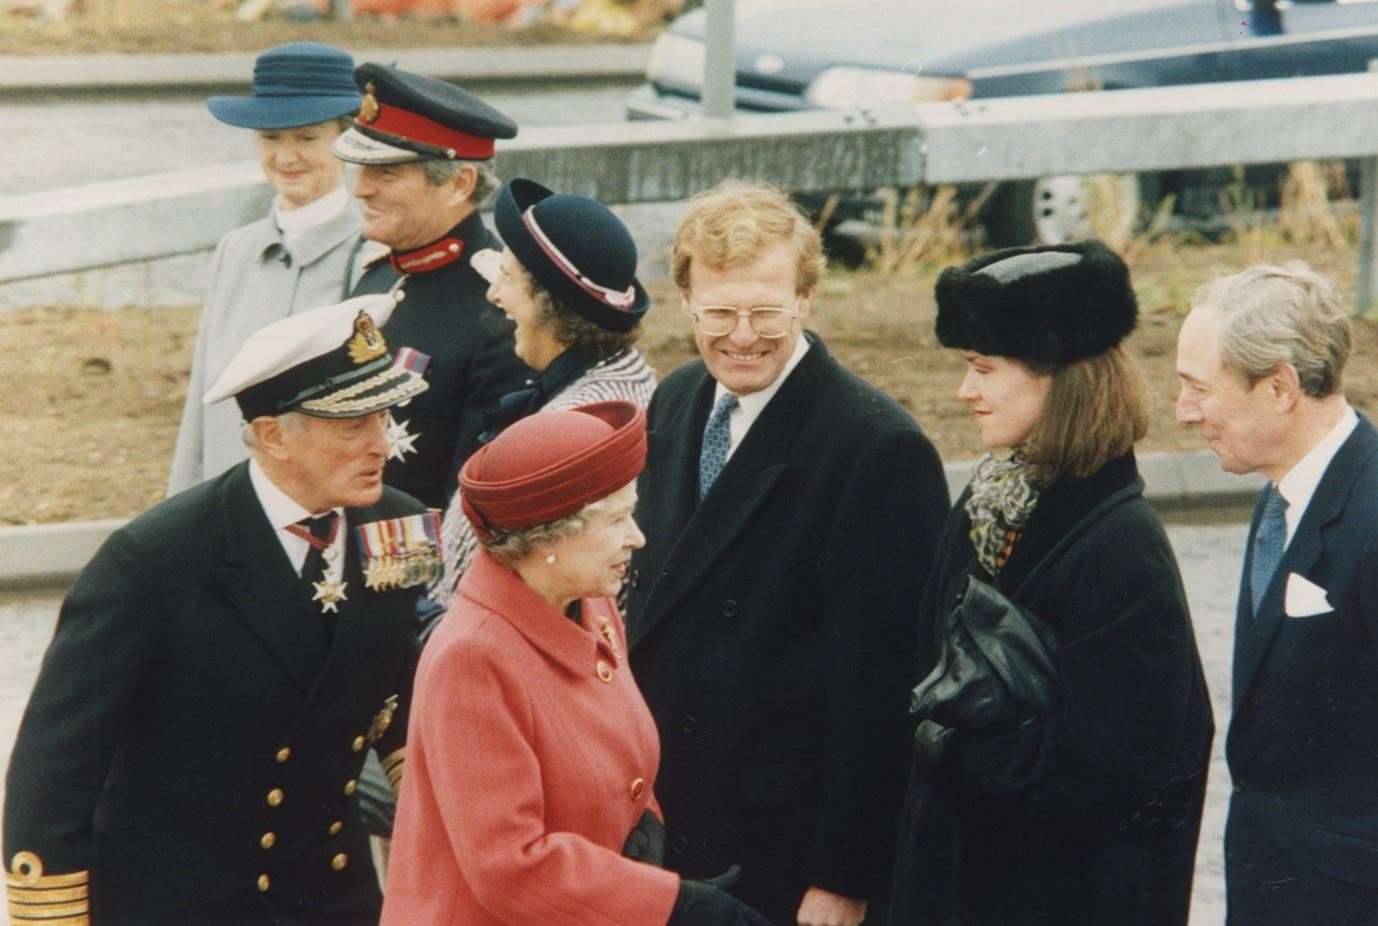 Her Majesty at the opening of Queen Elizabeth II bridge, in Dartford, 1991